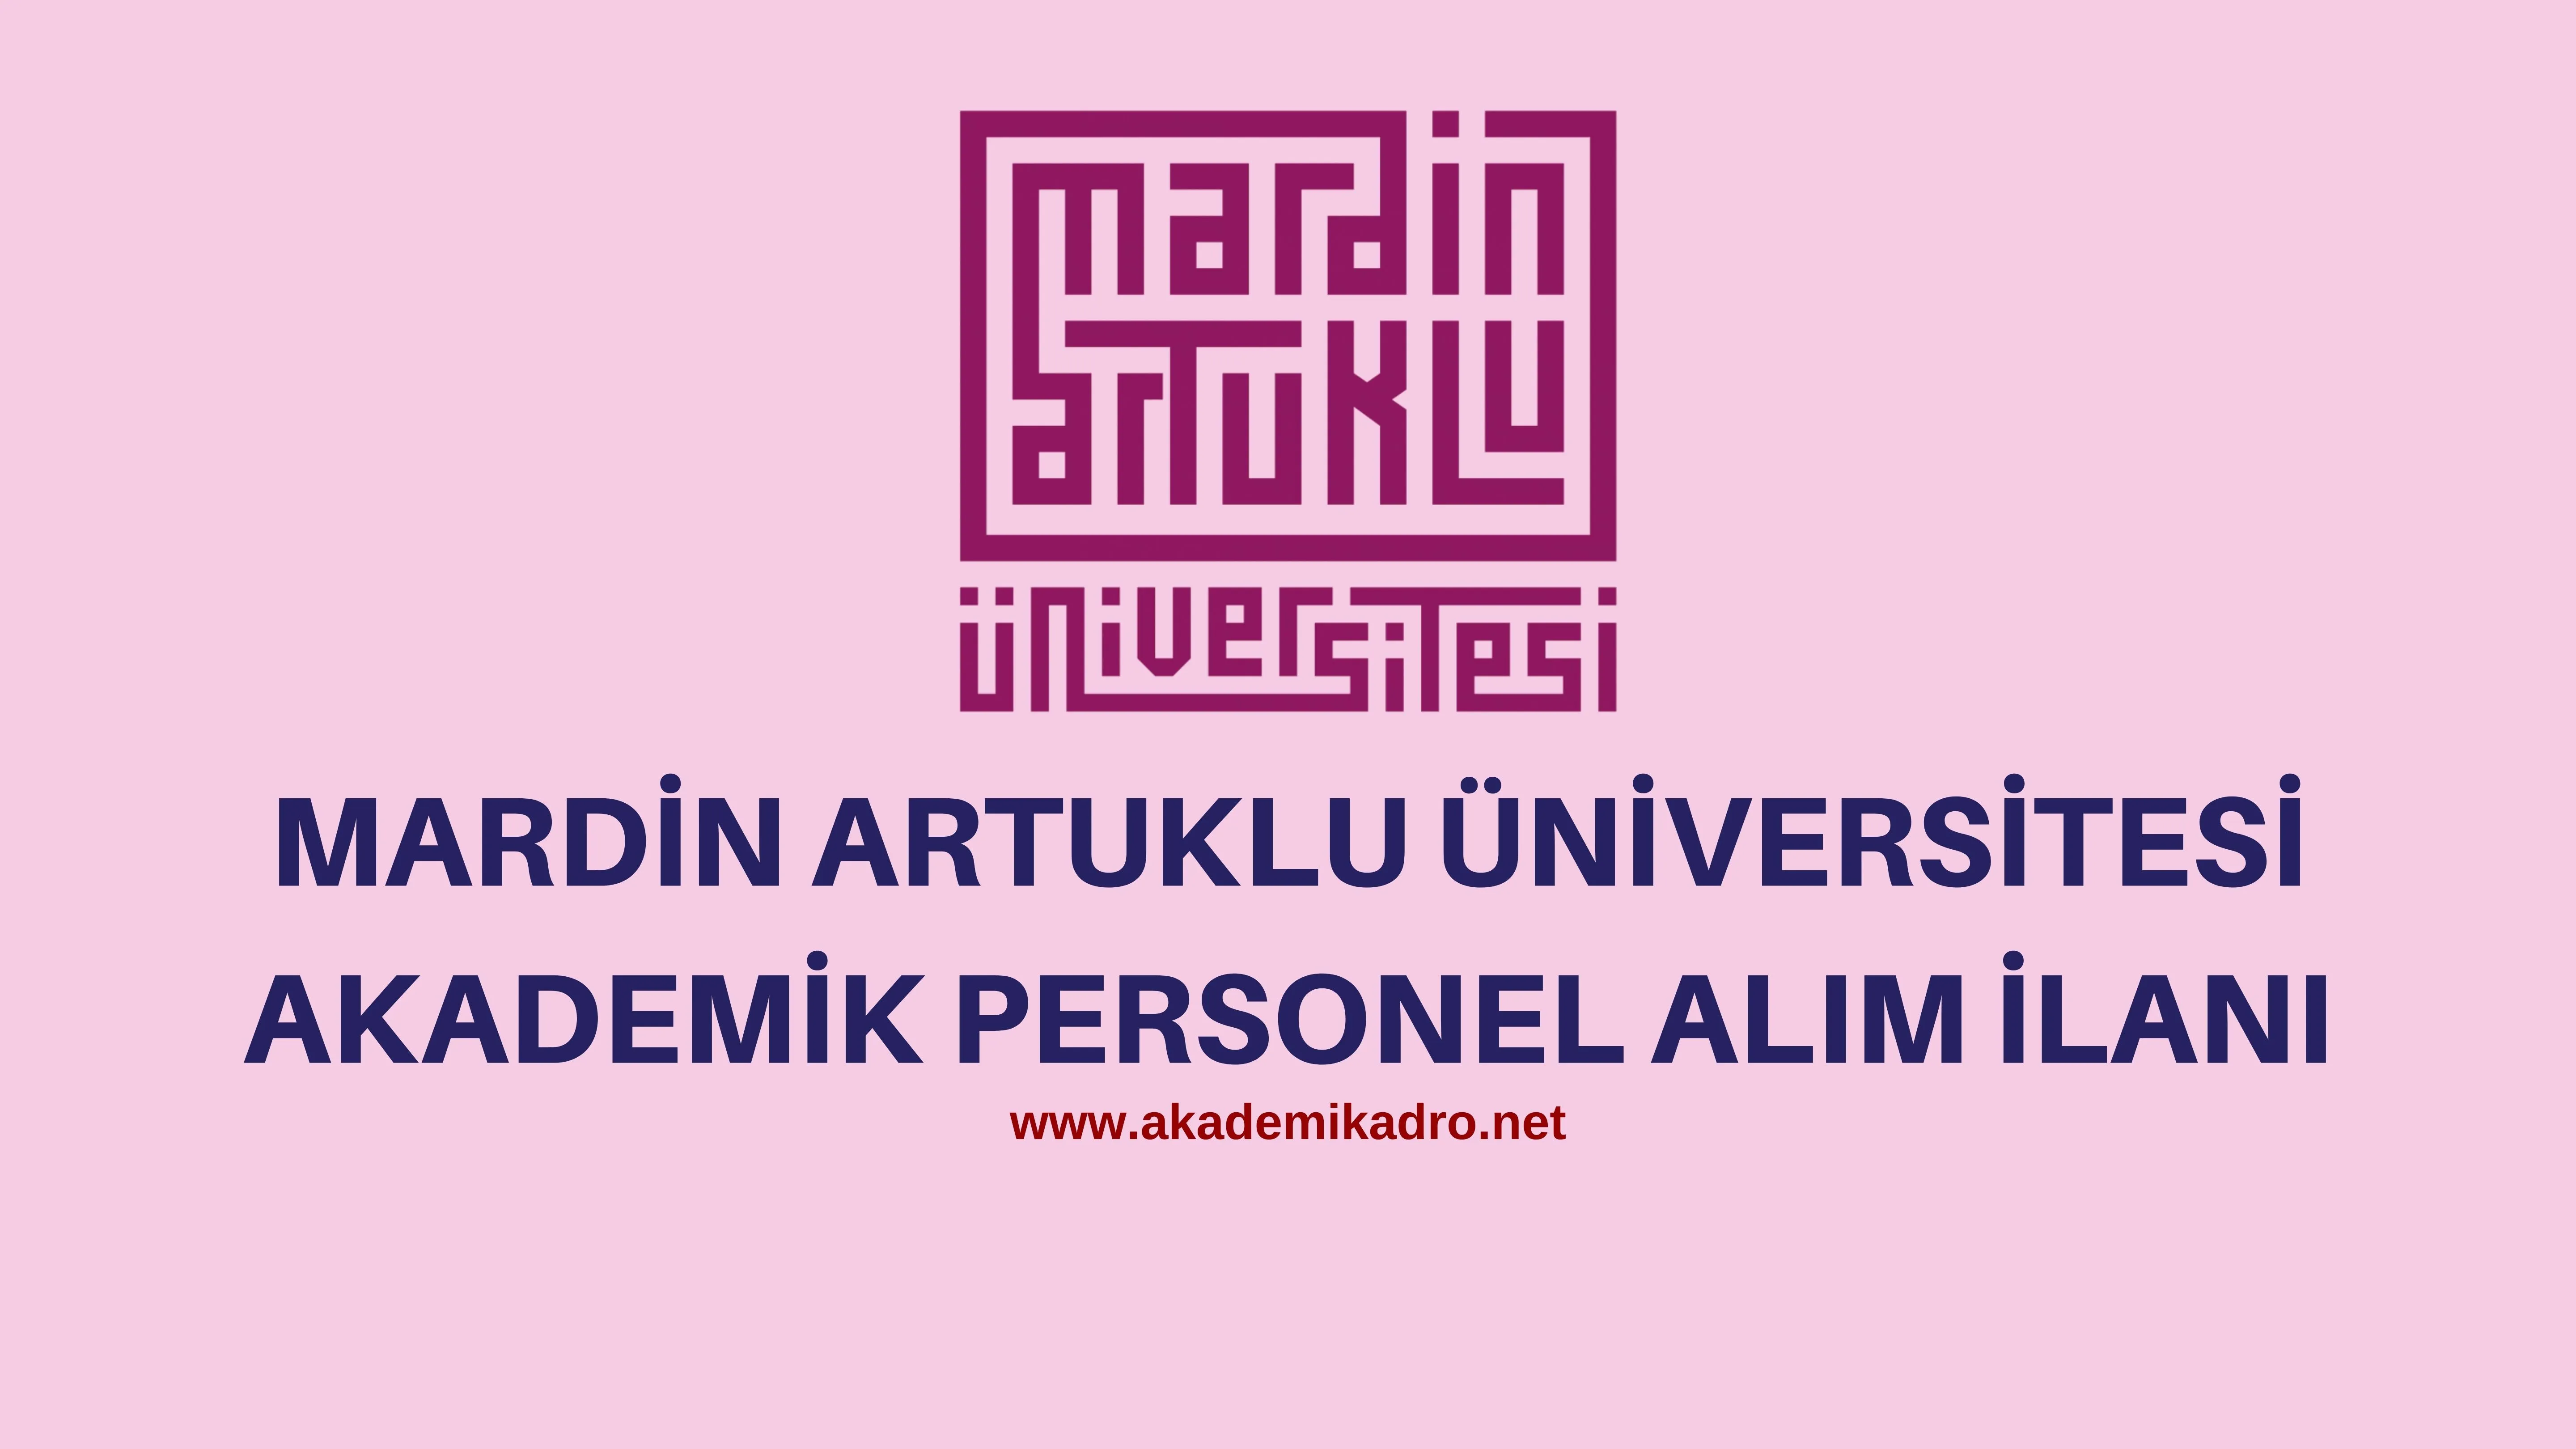 Mardin Artuklu Üniversitesi 16 akademik personel alacaktır.